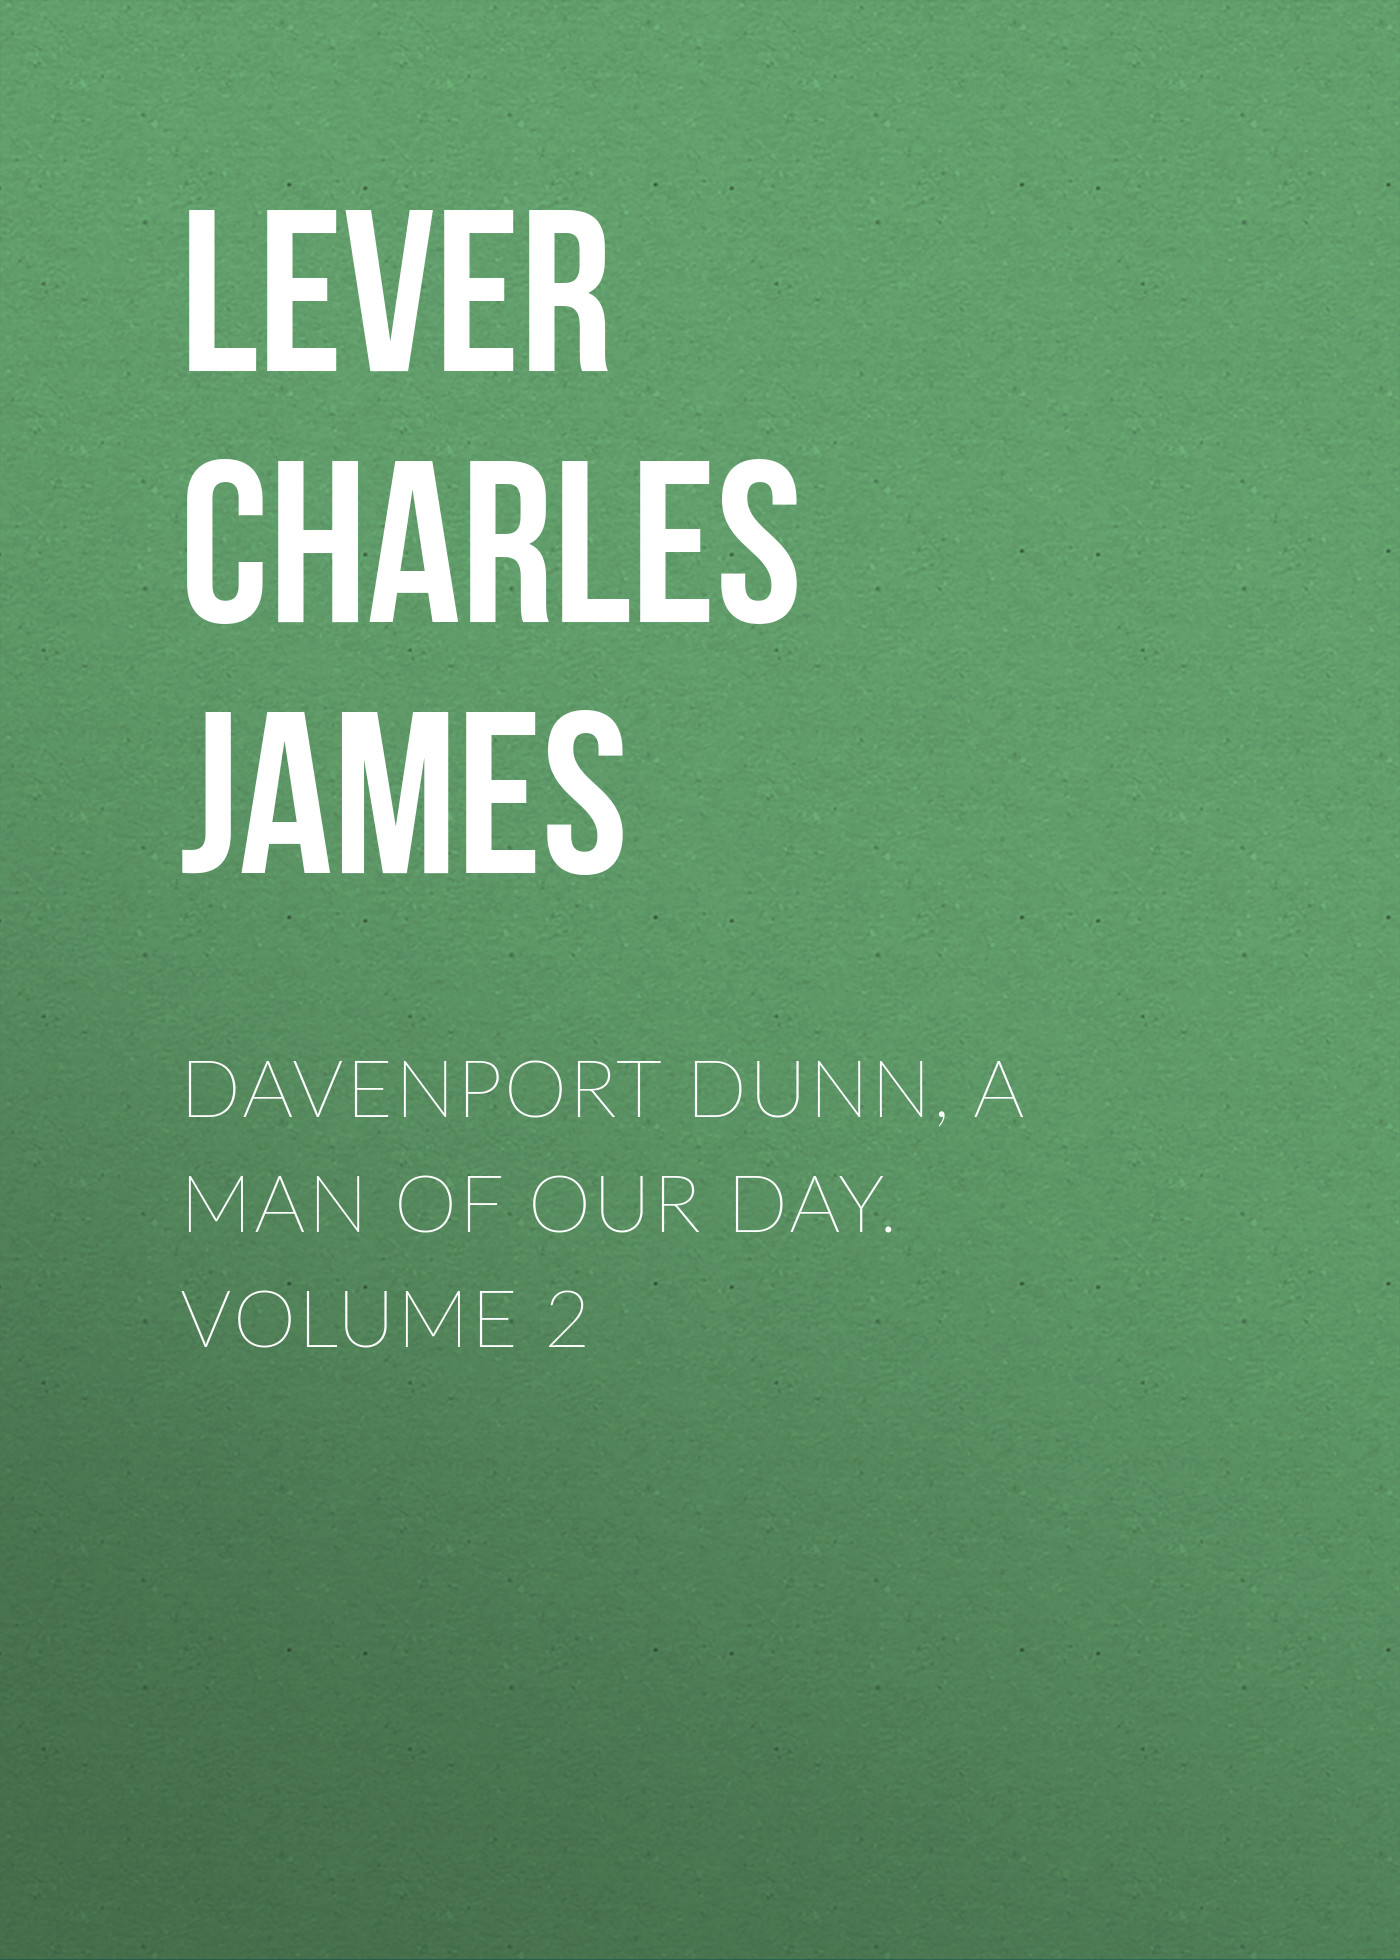 Книга Davenport Dunn, a Man of Our Day. Volume 2 из серии , созданная Charles Lever, может относится к жанру Литература 19 века, Зарубежная старинная литература, Зарубежная классика. Стоимость электронной книги Davenport Dunn, a Man of Our Day. Volume 2 с идентификатором 25448468 составляет 0 руб.